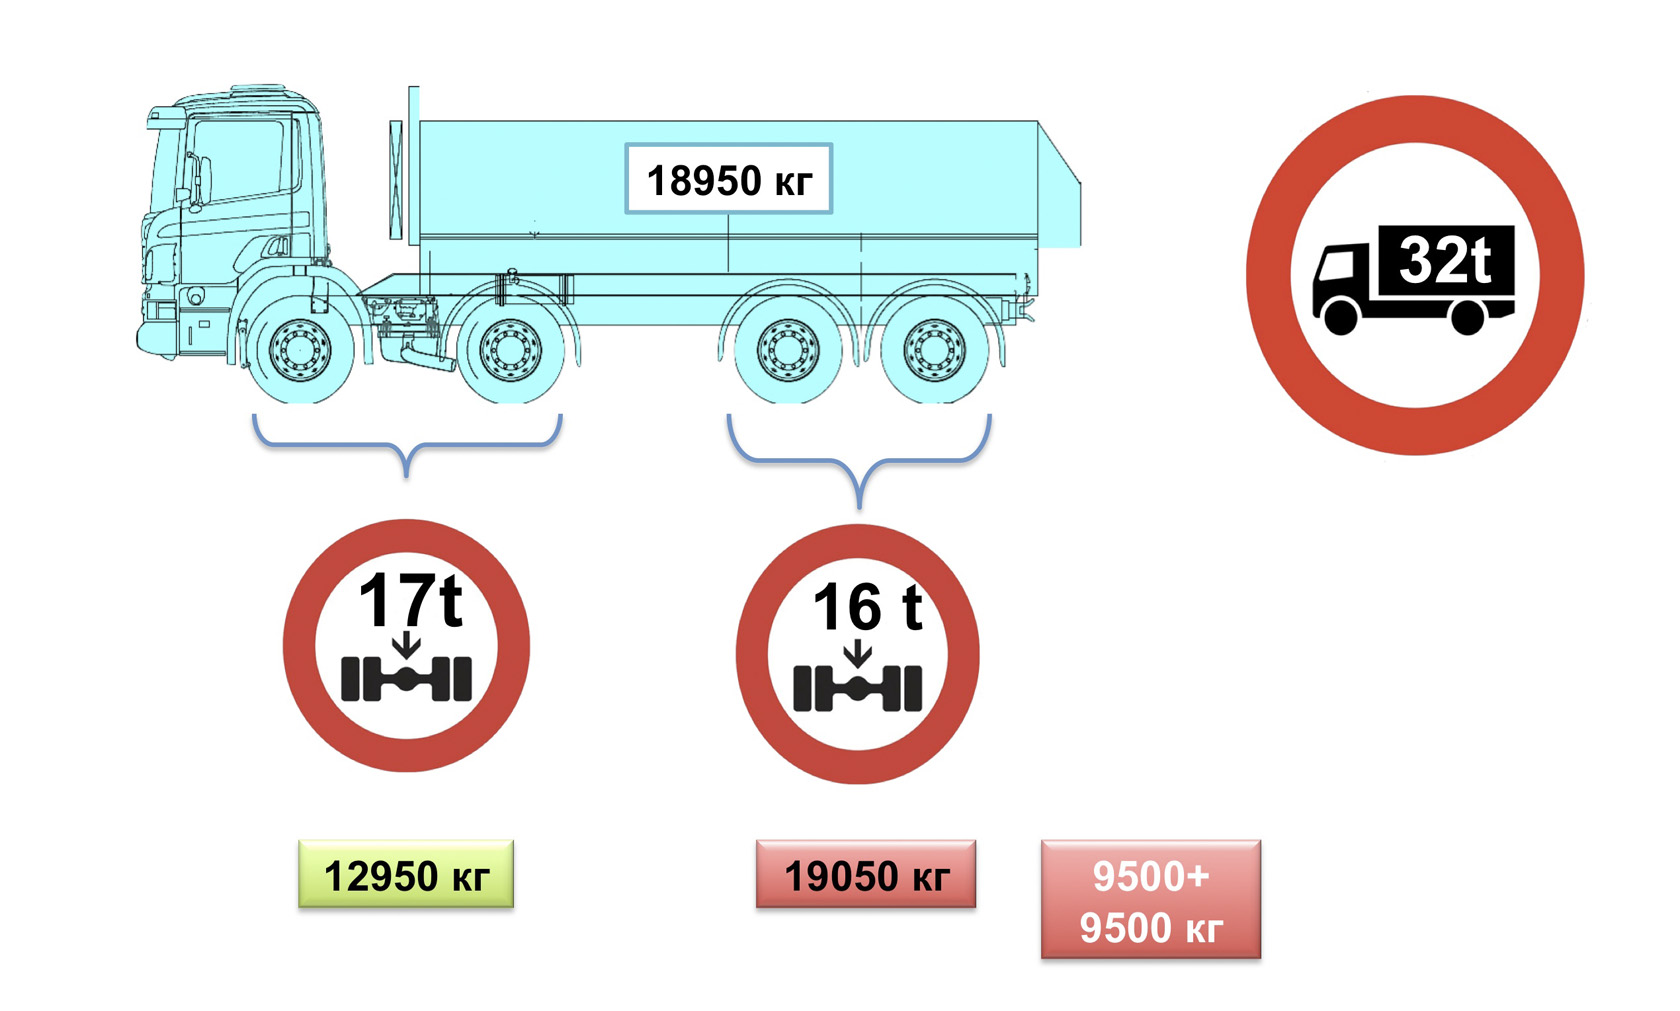 Разрешенный максимальный вес. Допустимая масса на оси грузовых автомобилей в России. Допустимая масса нагрузки на ось грузового автомобиля. Разрешенная масса нагрузки на ось грузового автомобиля. Максимальная разрешенная нагрузка на ось грузового автомобиля.